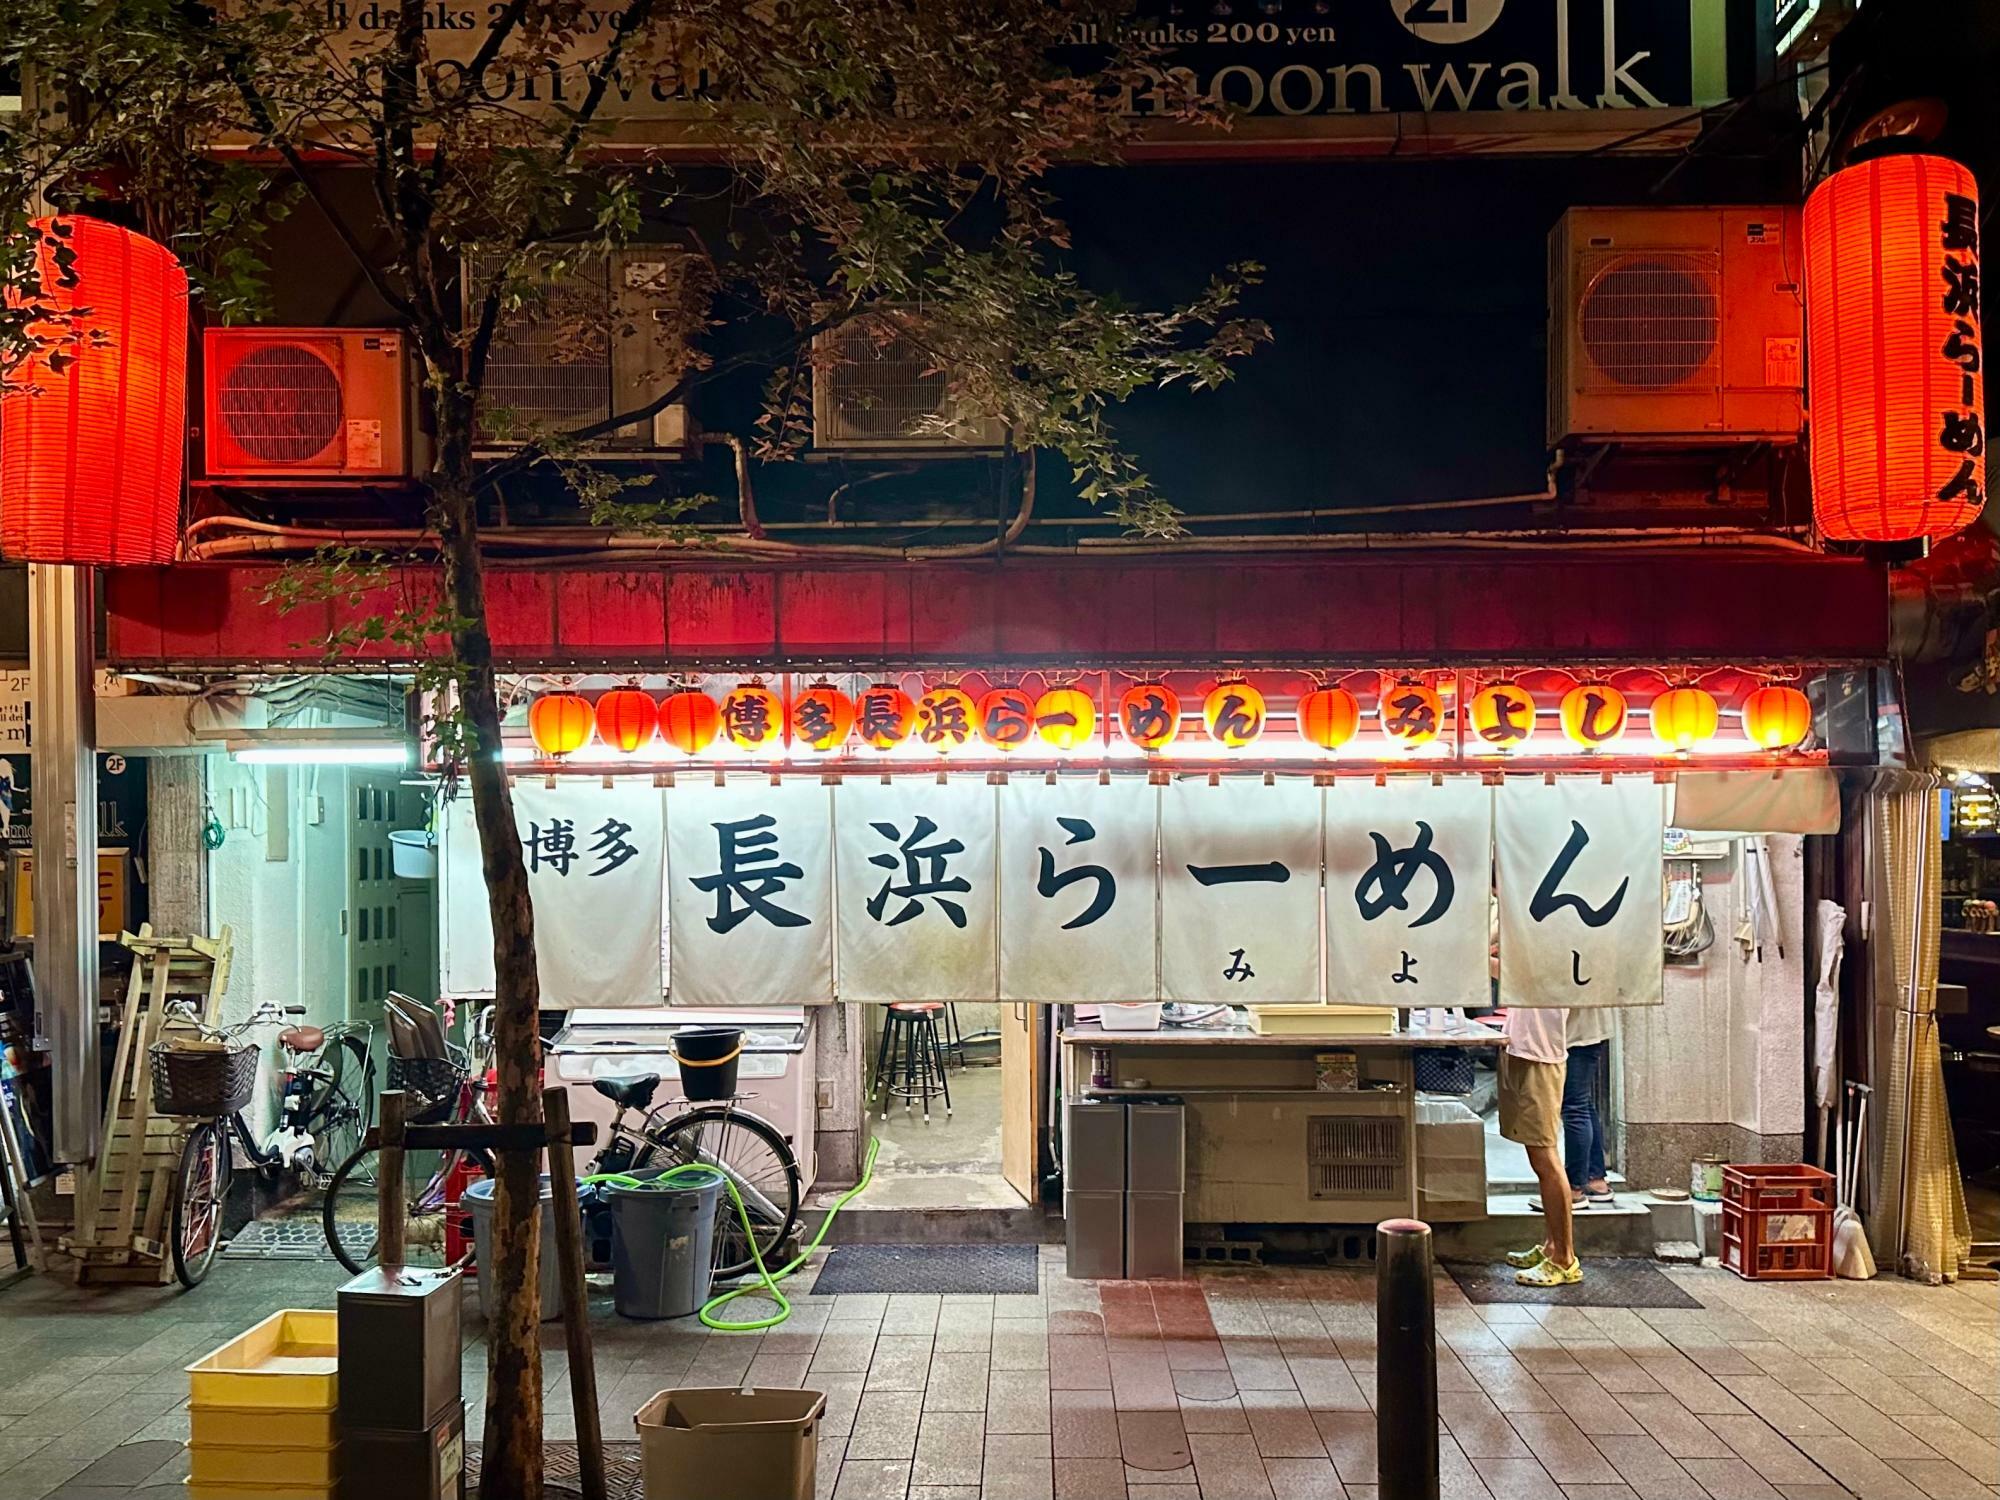 福岡以外の場所にある長浜ラーメン店は「博多長浜ラーメン」を名乗ることが多い。